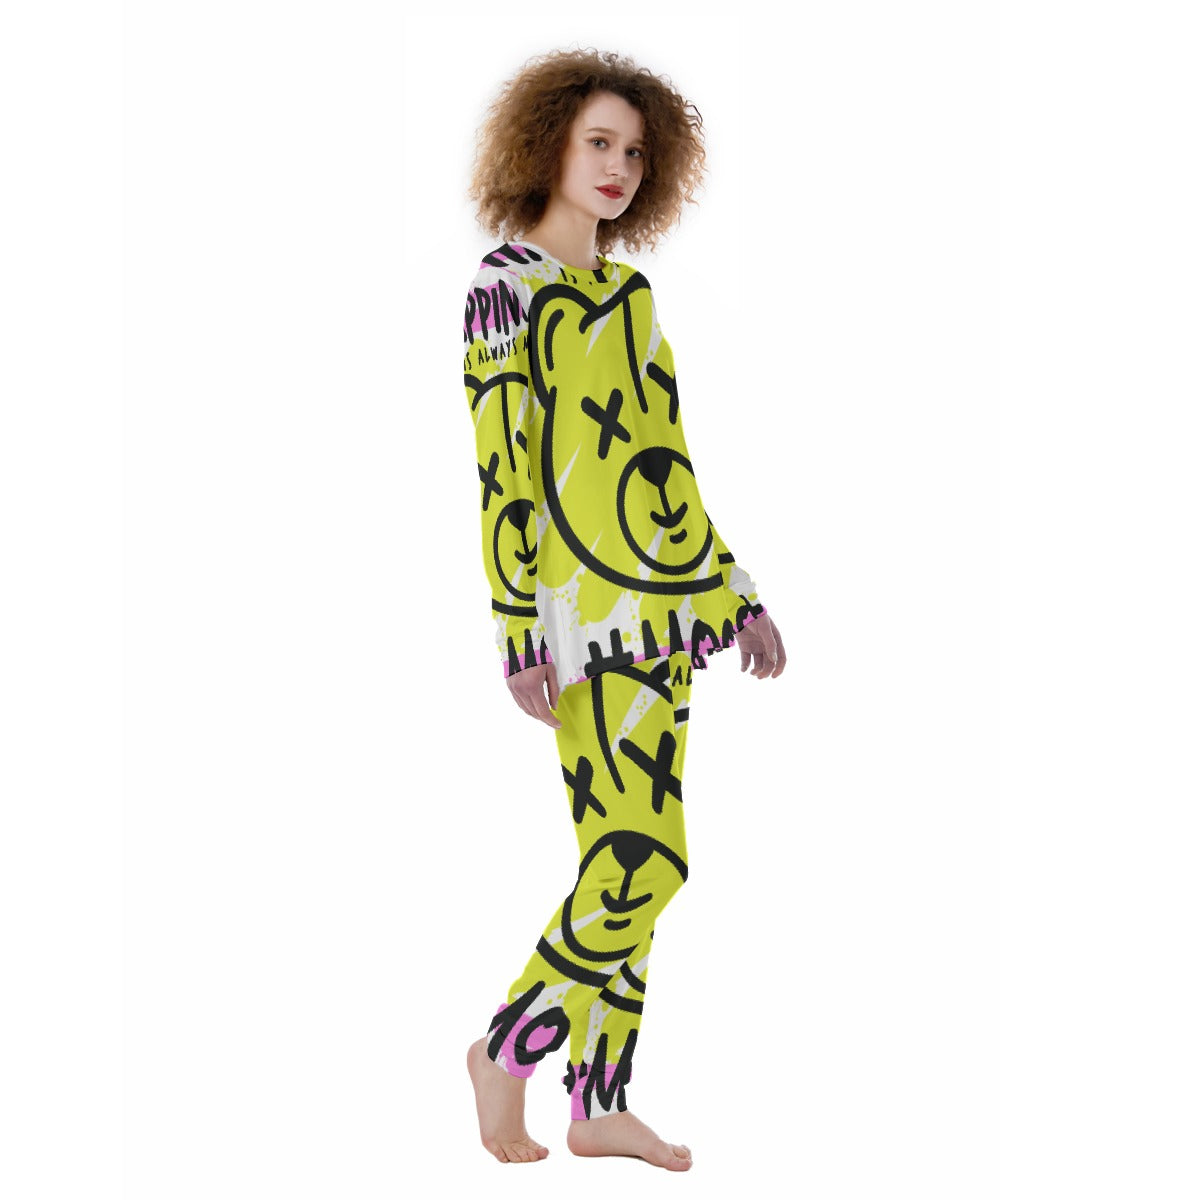 Beary Twisted - Cute Pajama Set